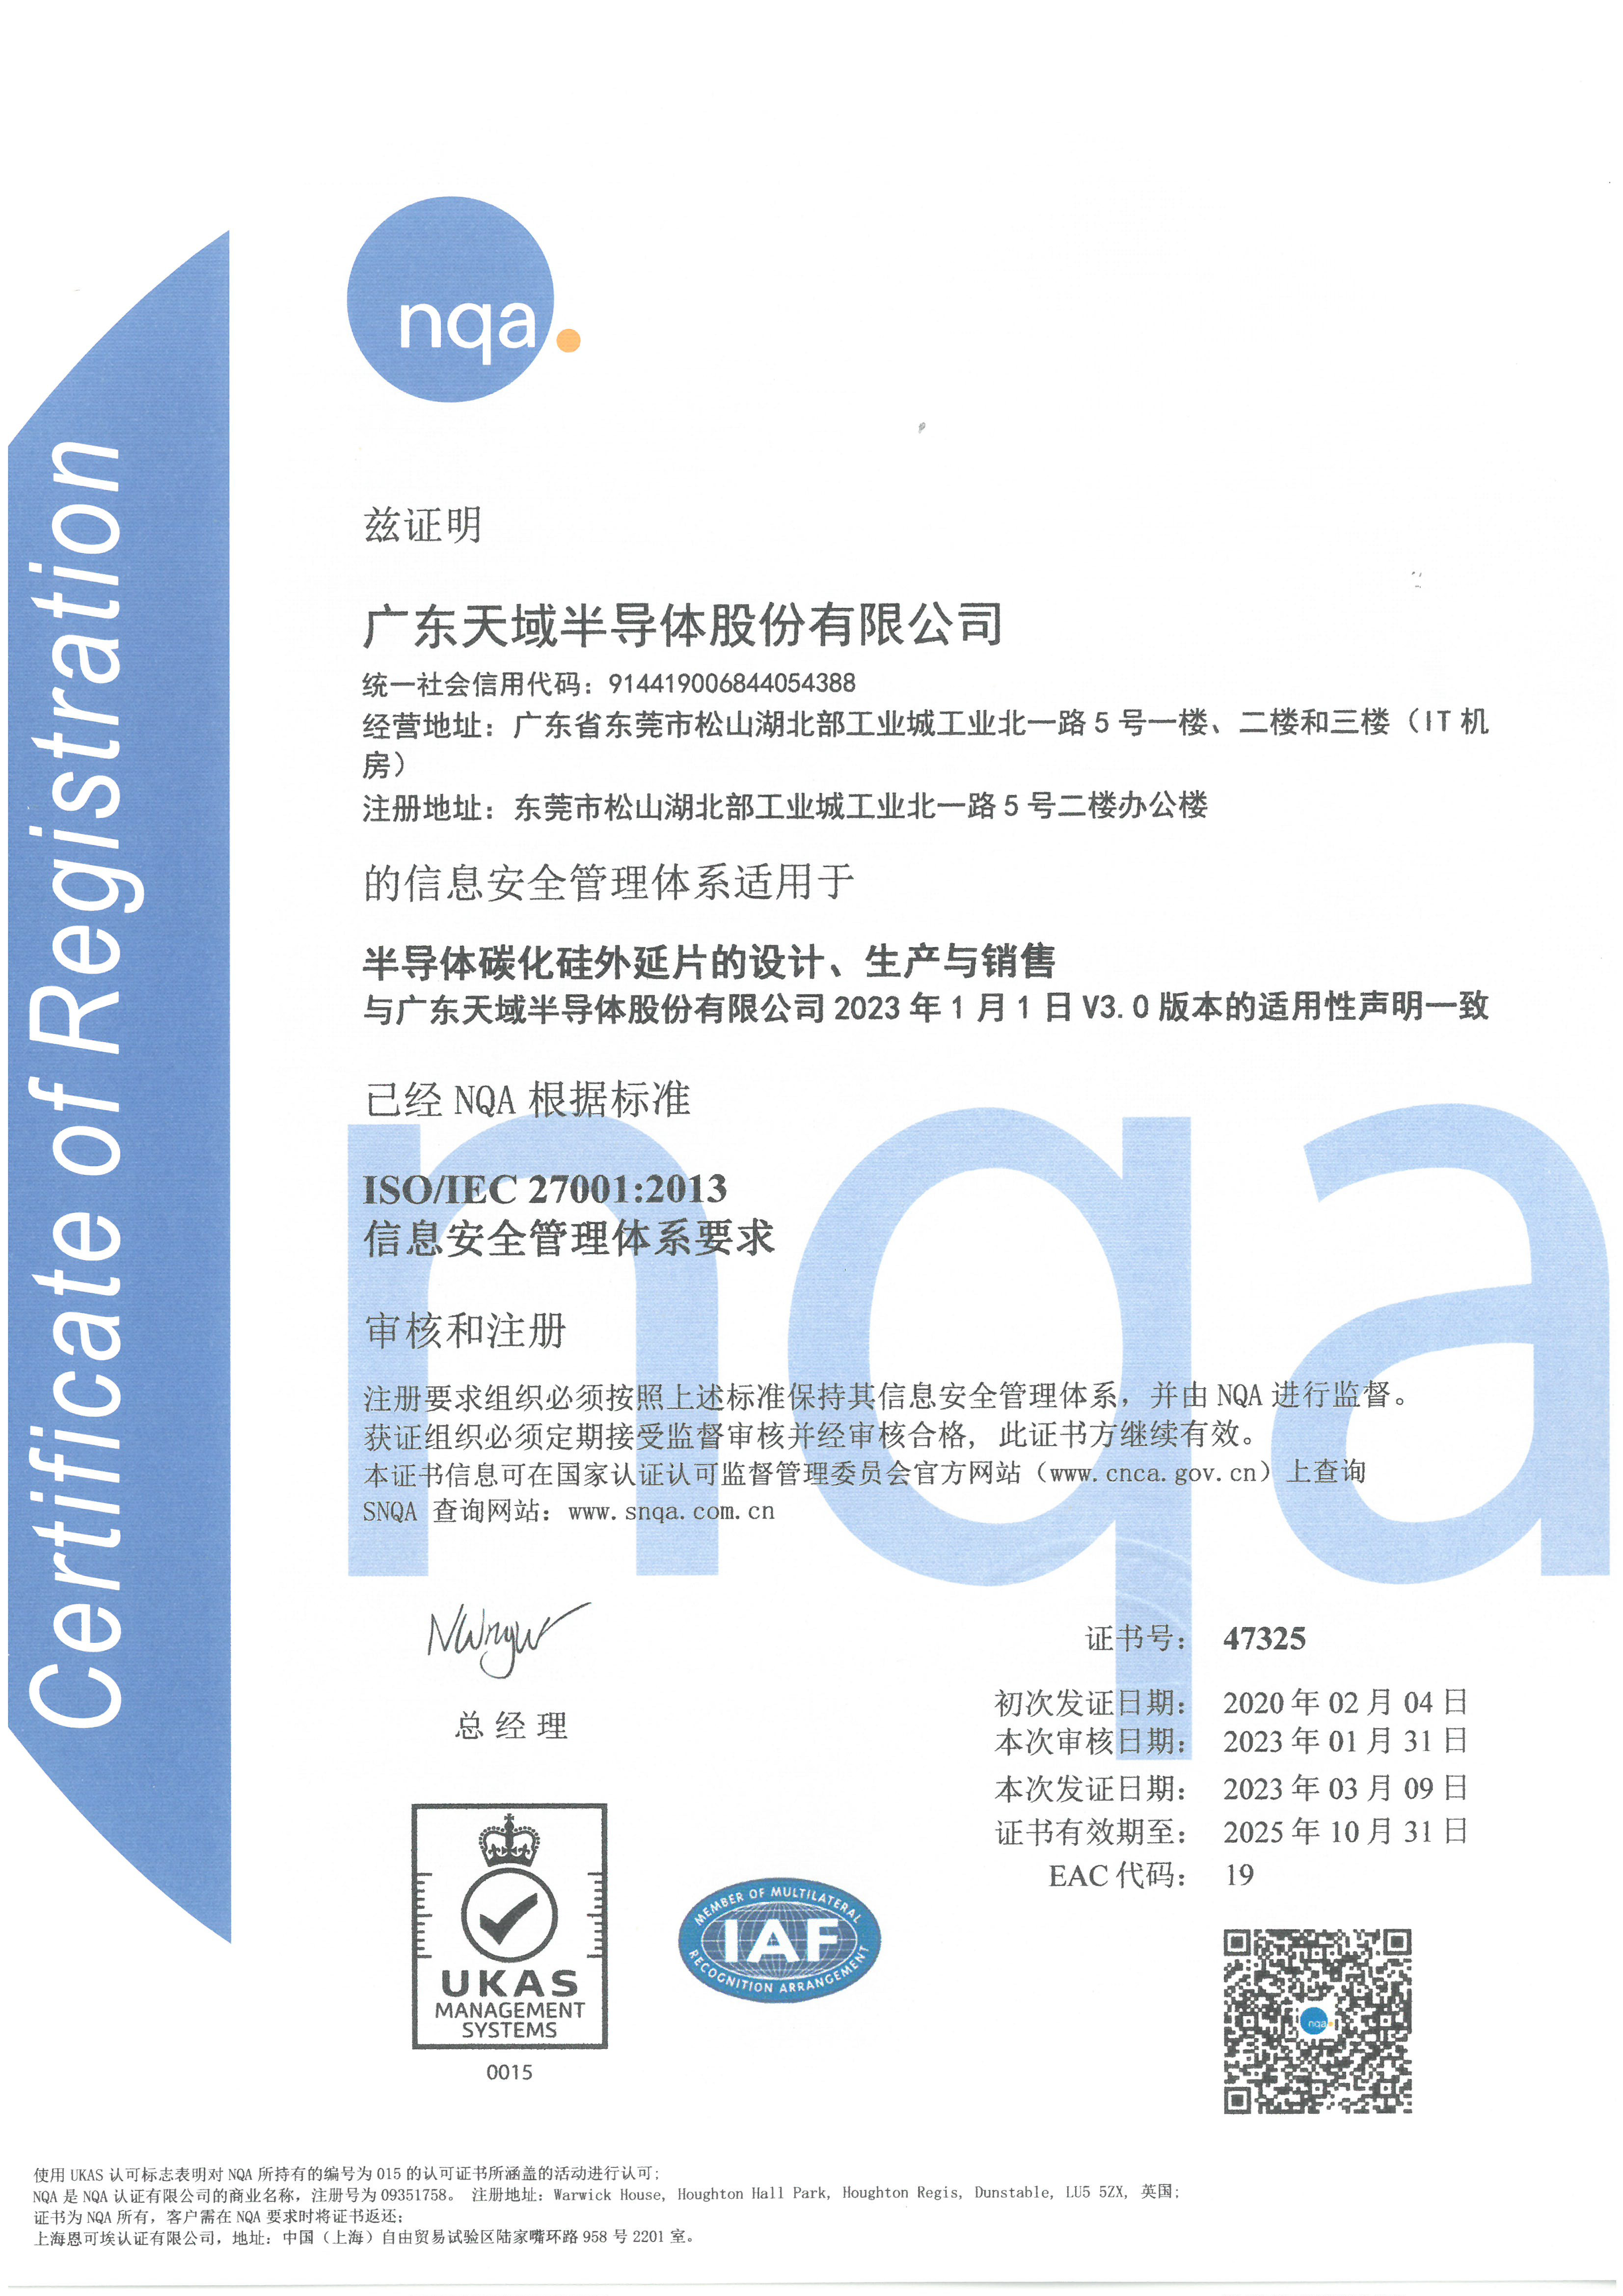 27001中文证书.jpg